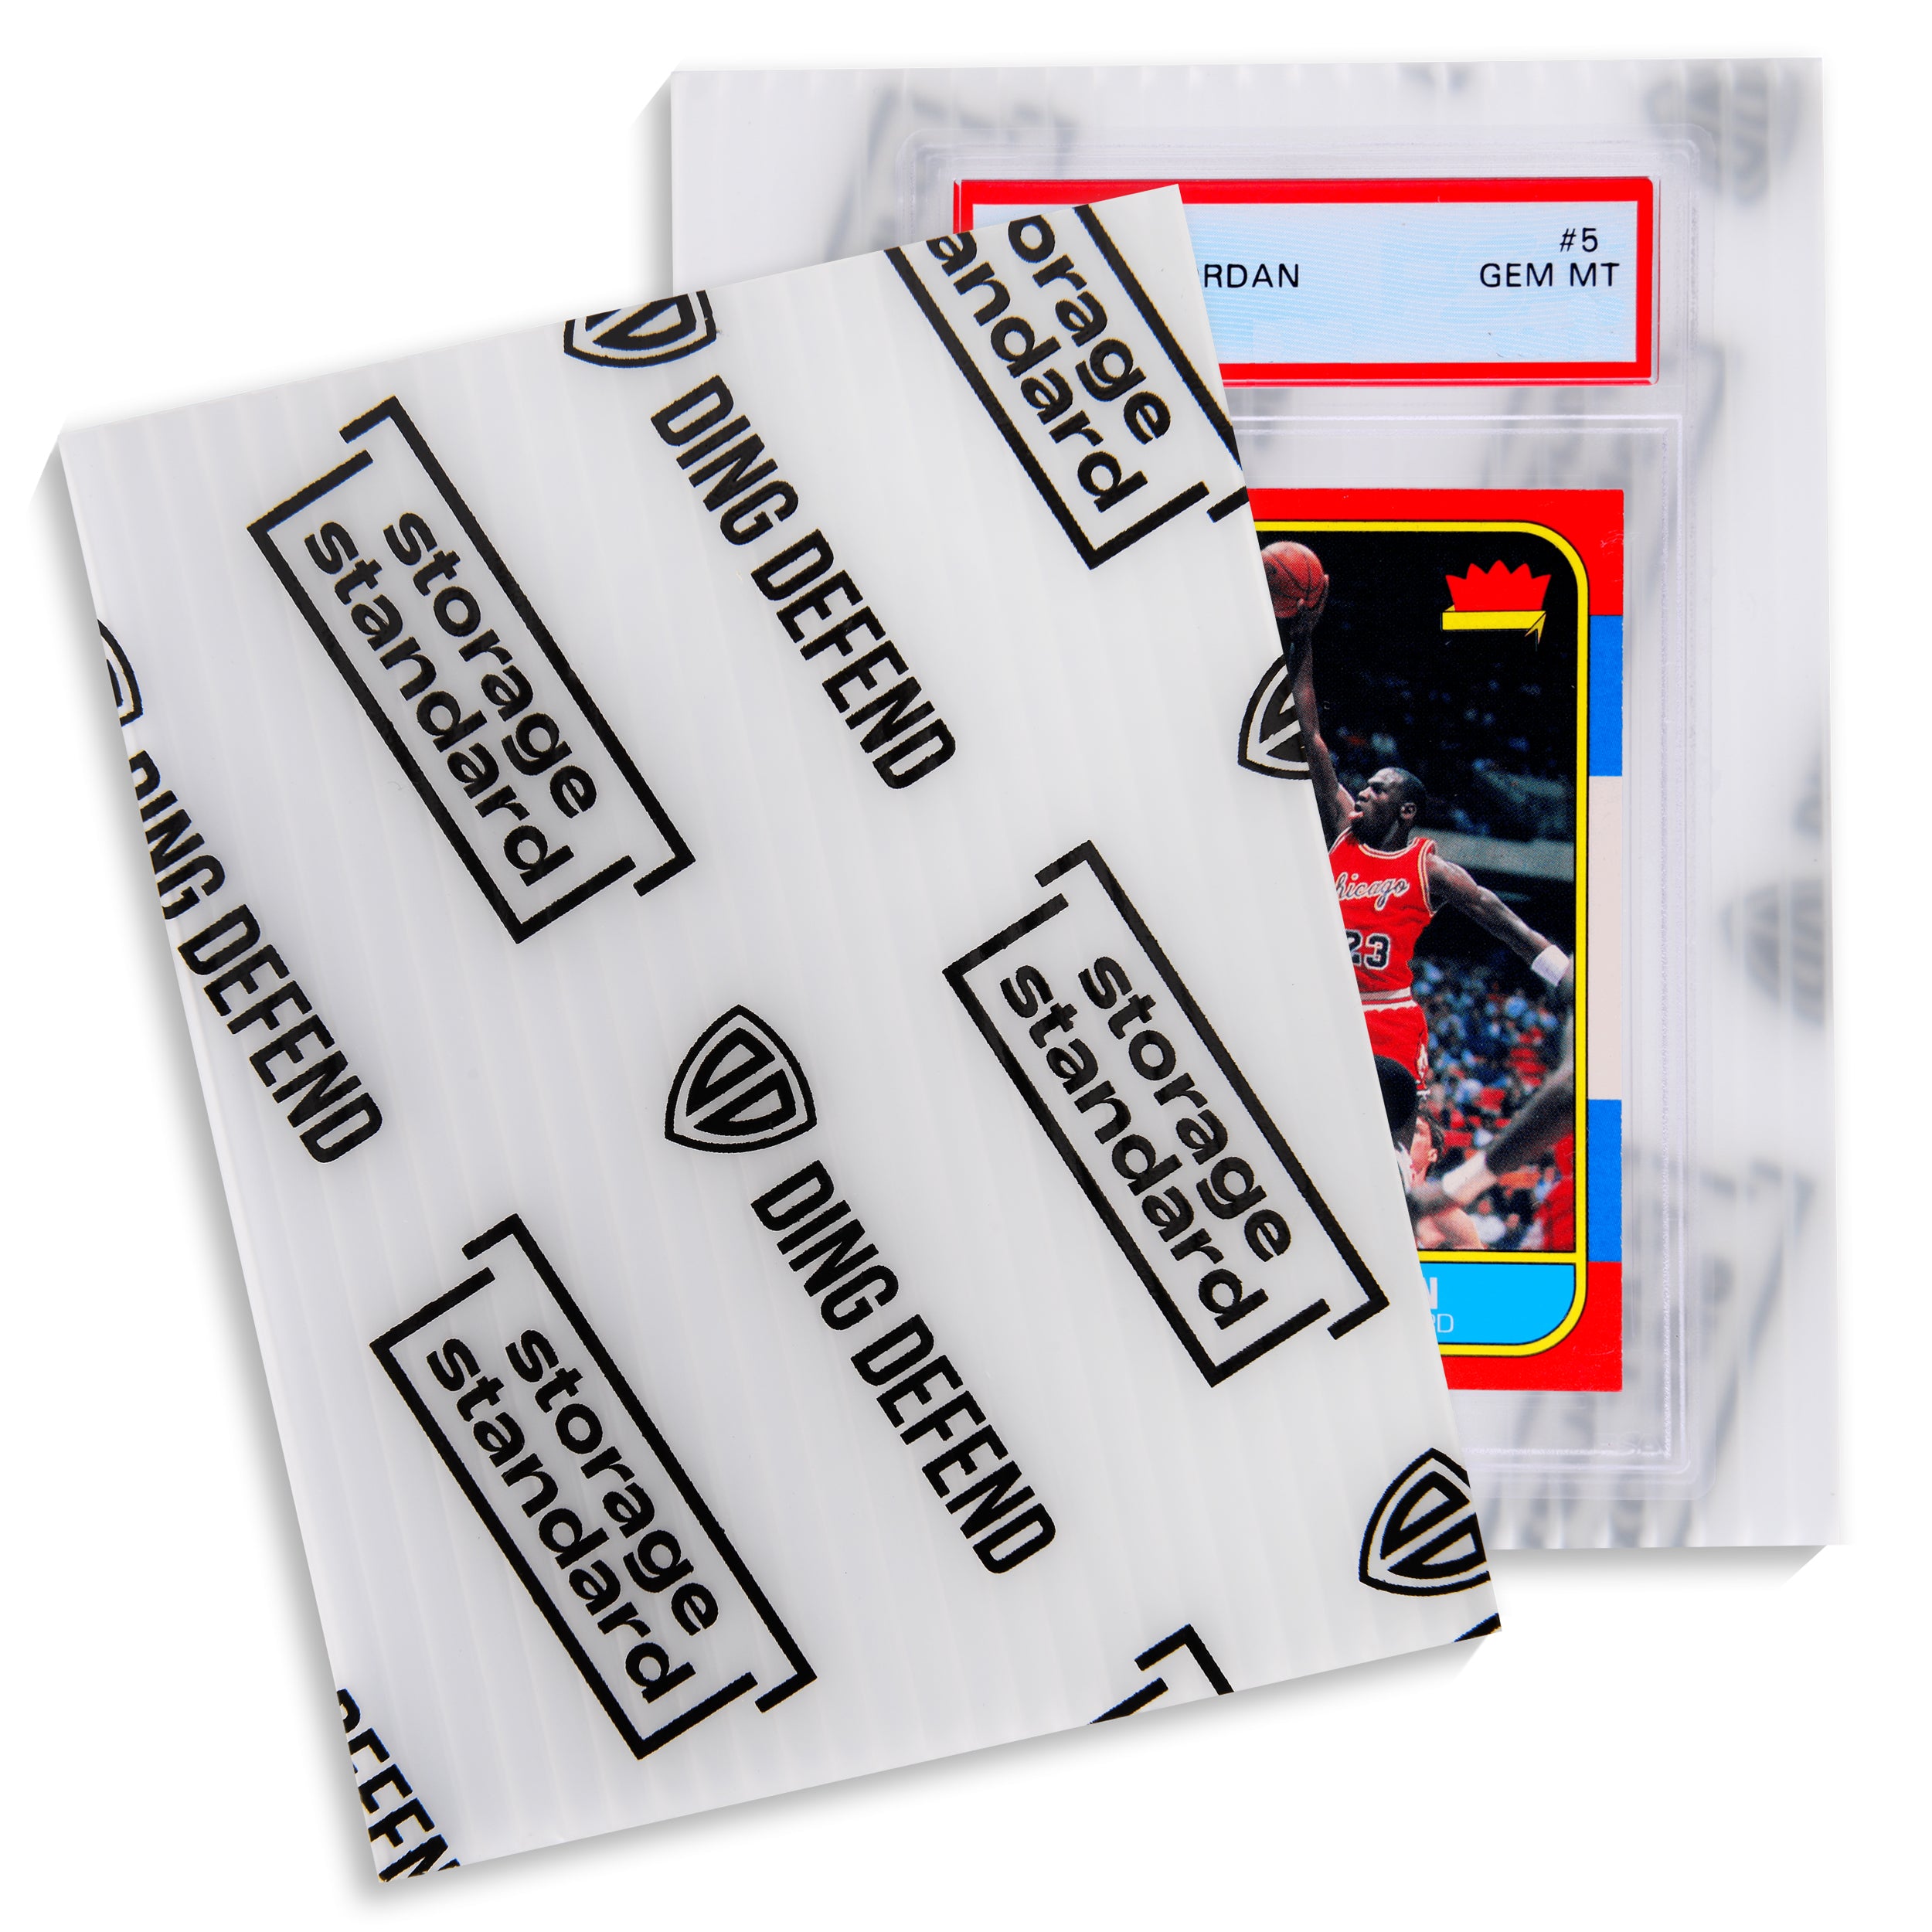 Key/card holder - Gem